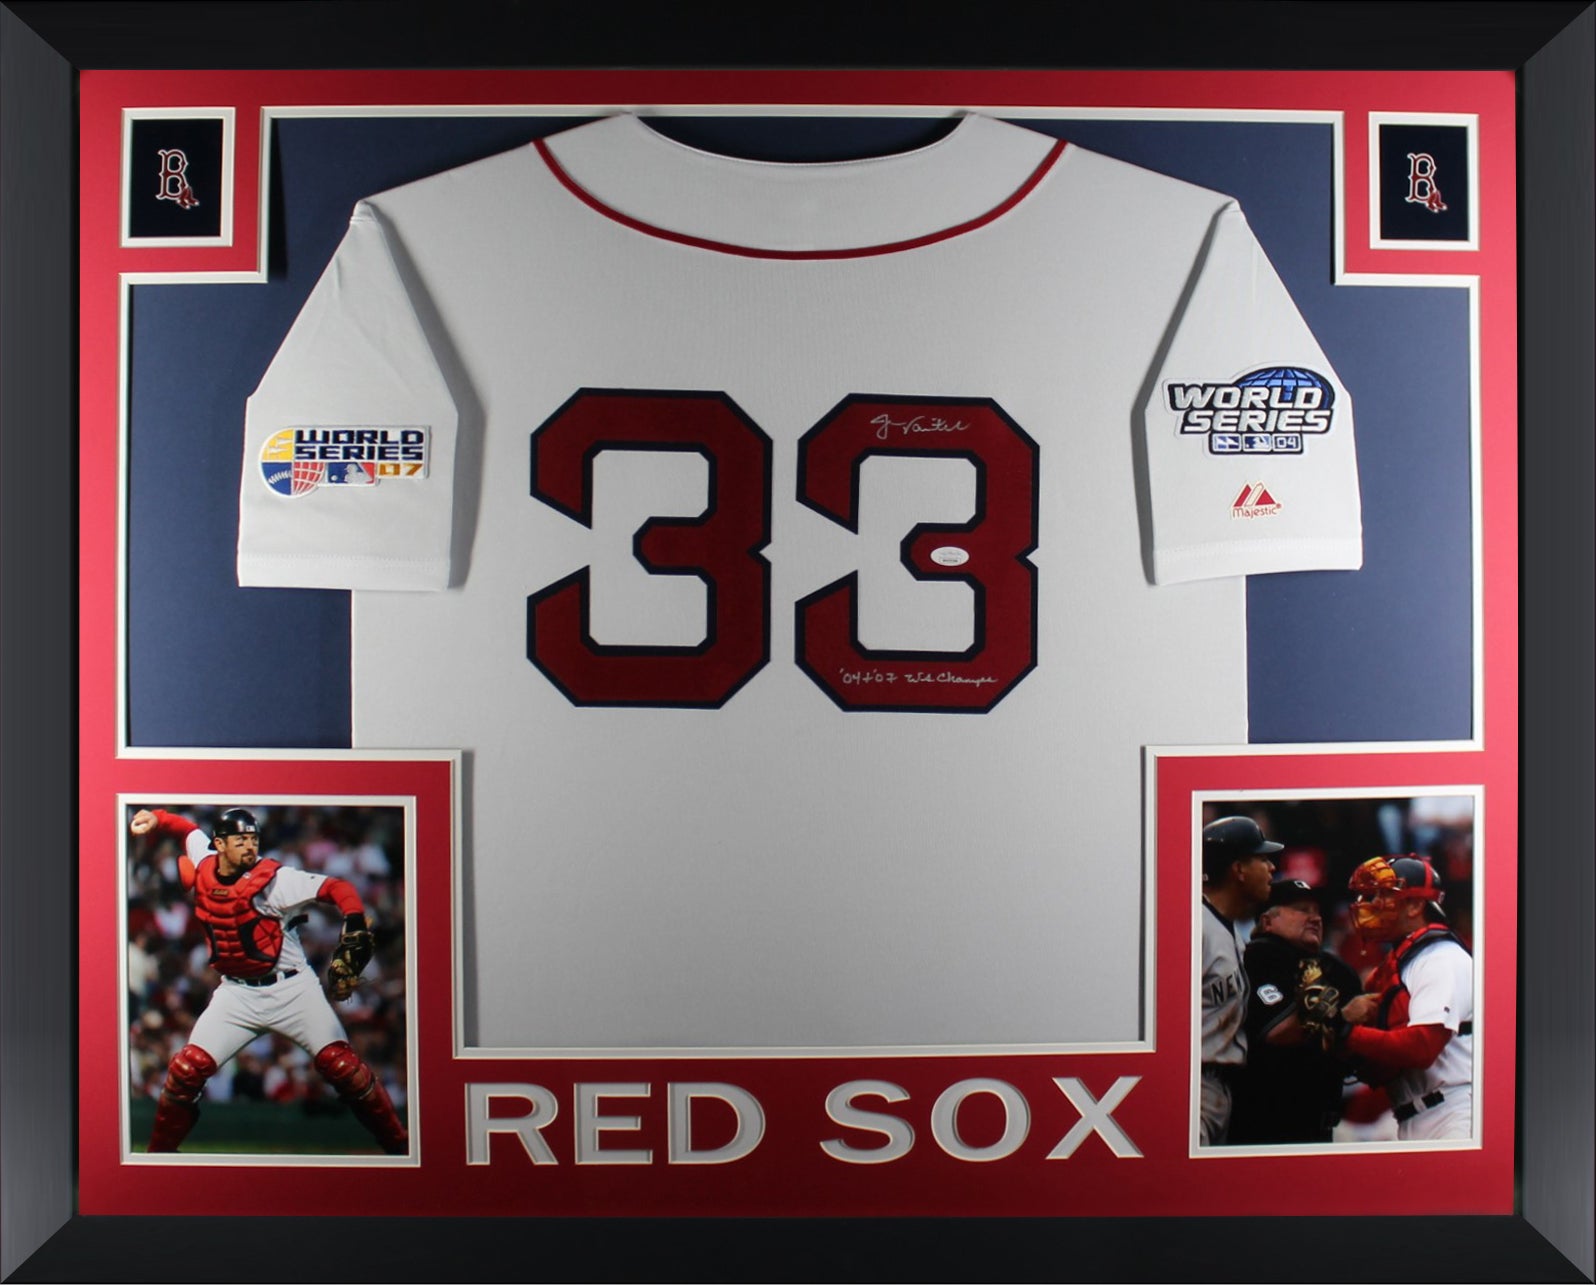 Boston Red Sox Sports Memorabilia